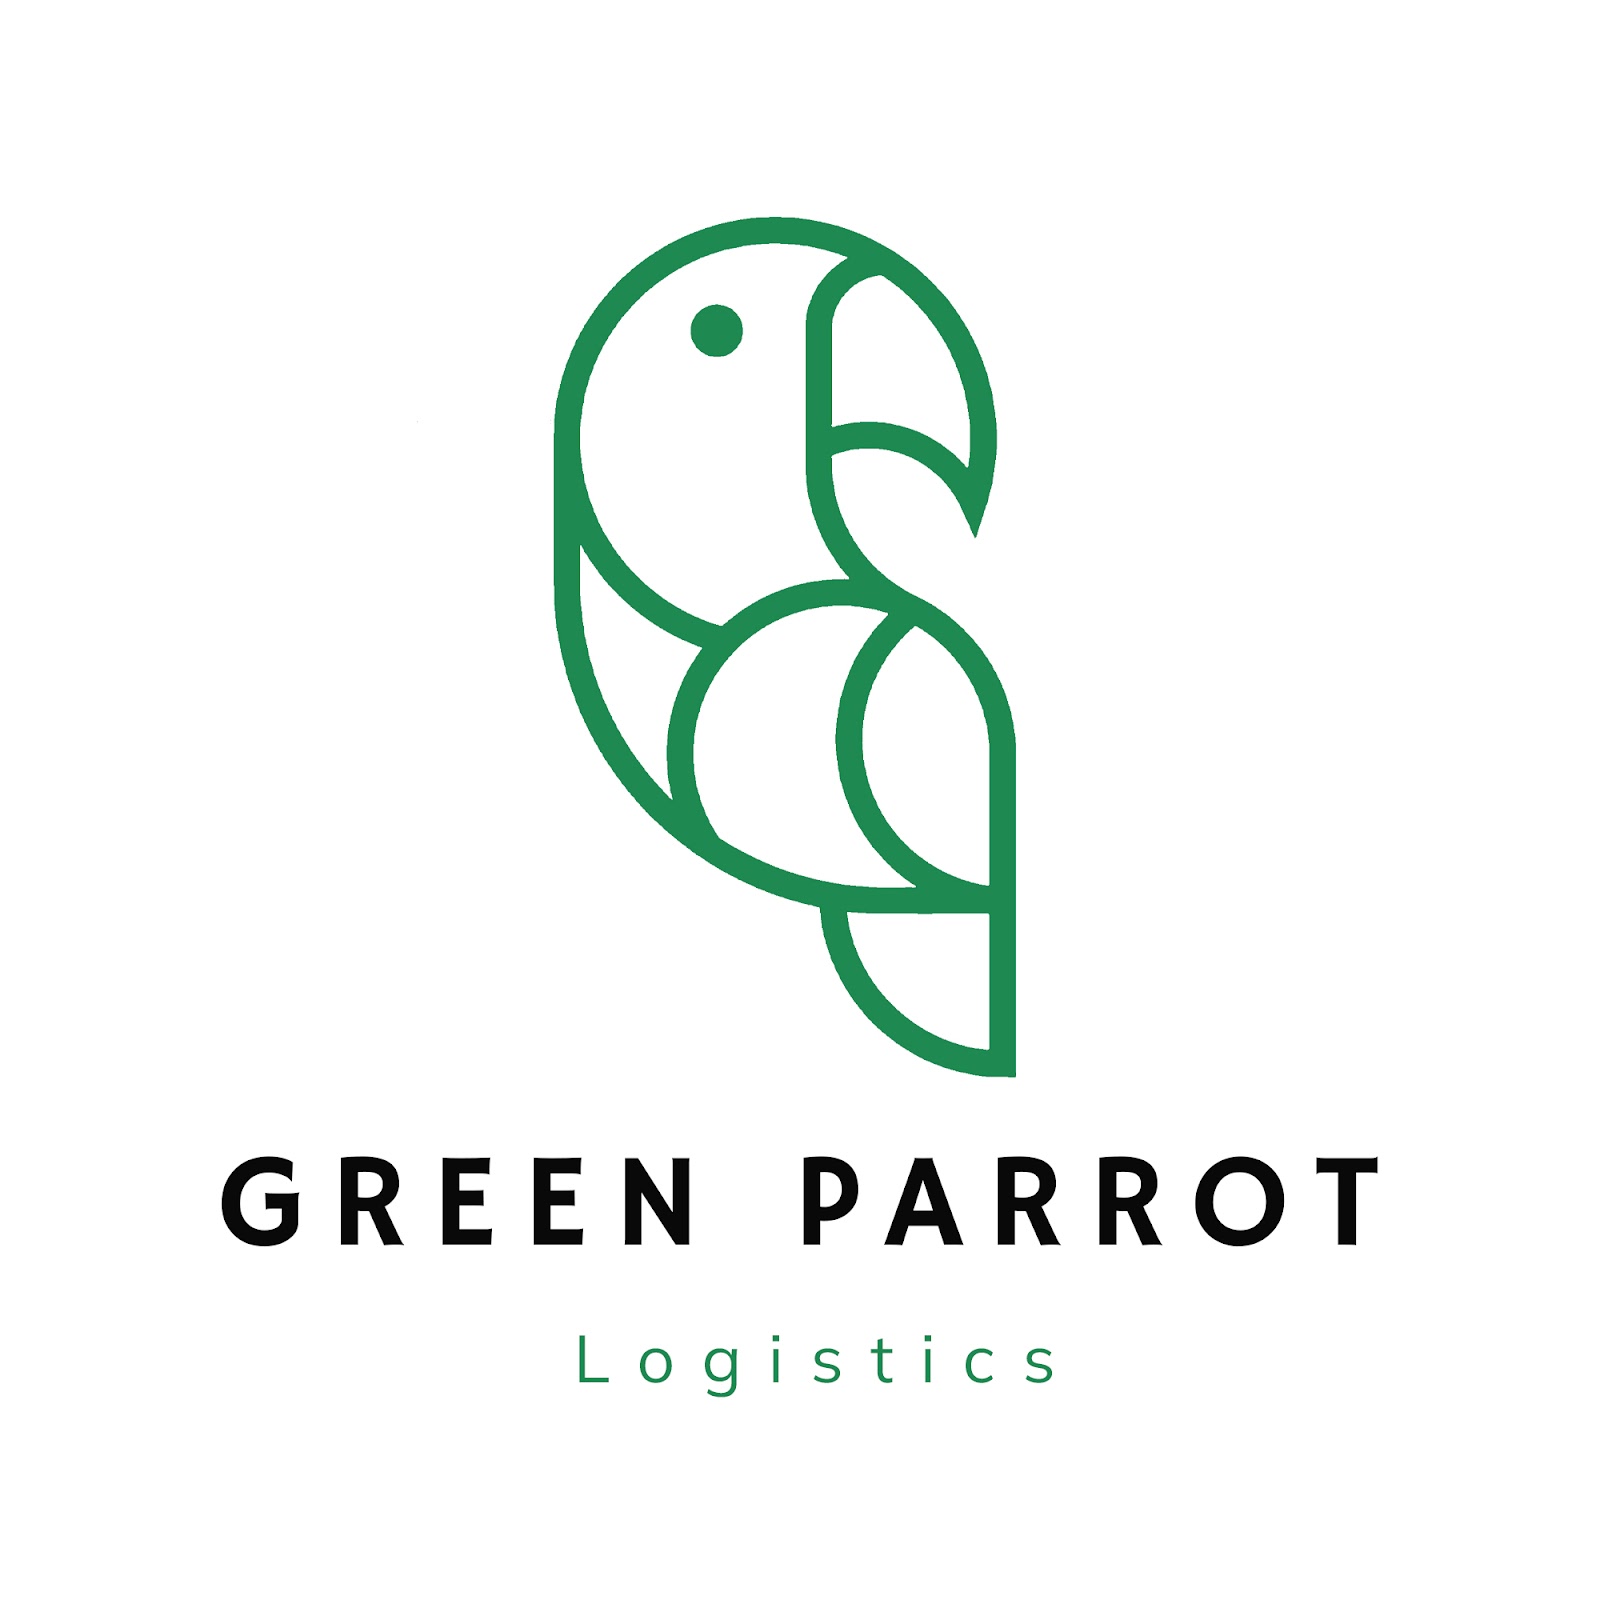 Green Parrot Logistics